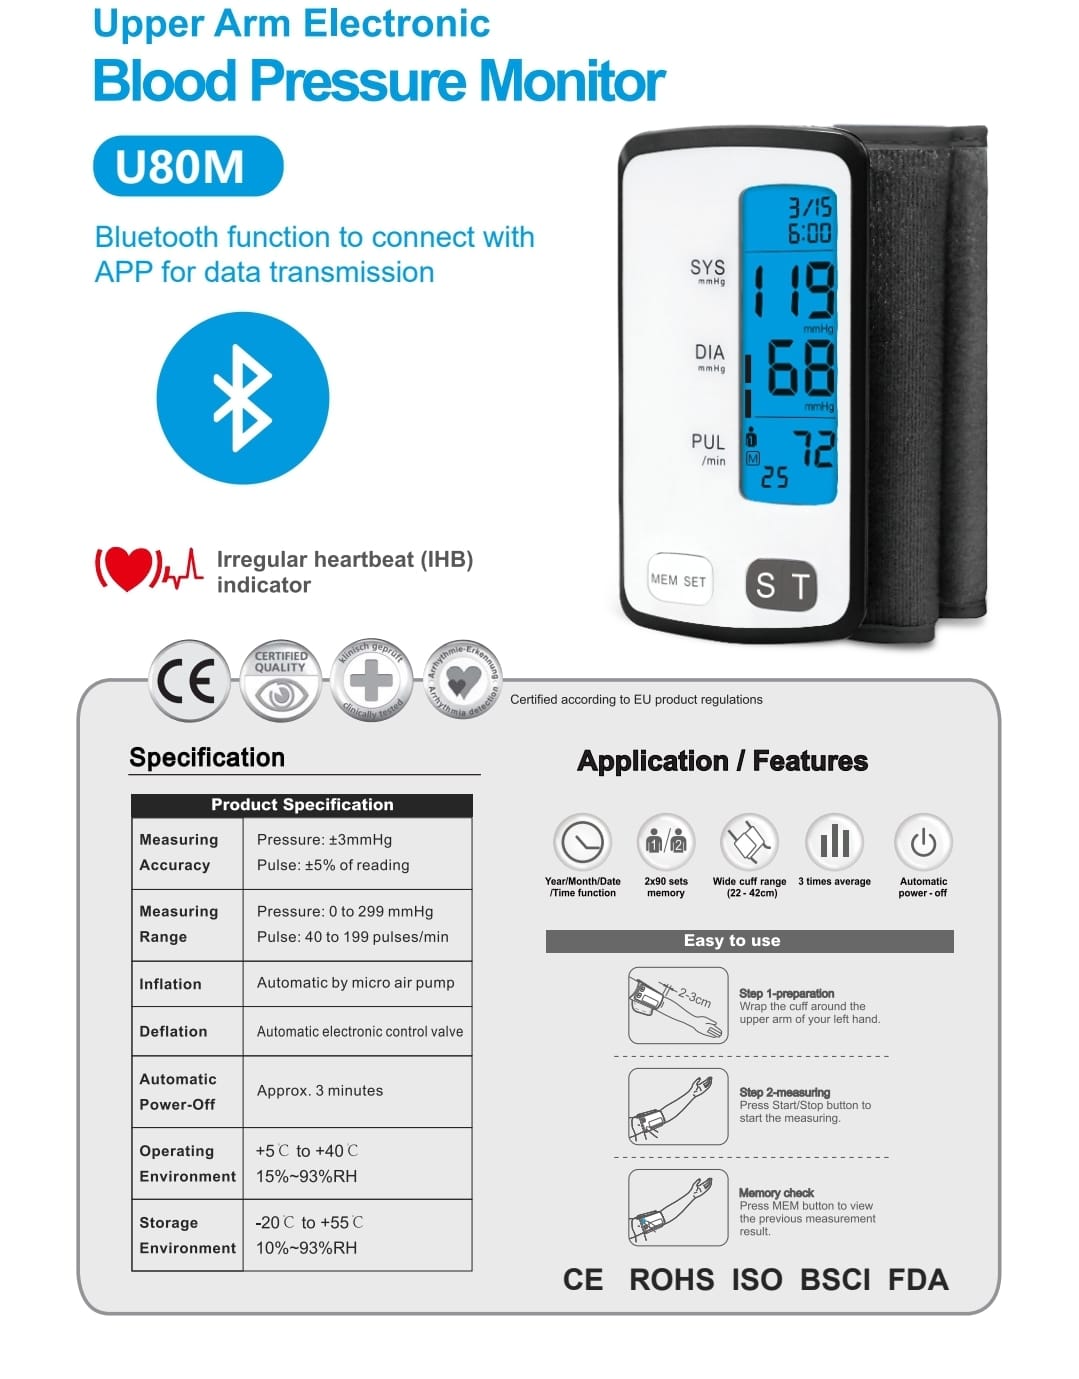 e-BPressure-BT: monitor de presión arterial automático electrónico para la parte superior del brazo con Bluetooth incorporado para conectarse a su teléfono móvil o computadora y compartir información con su cuidador o proveedor de servicios médicos